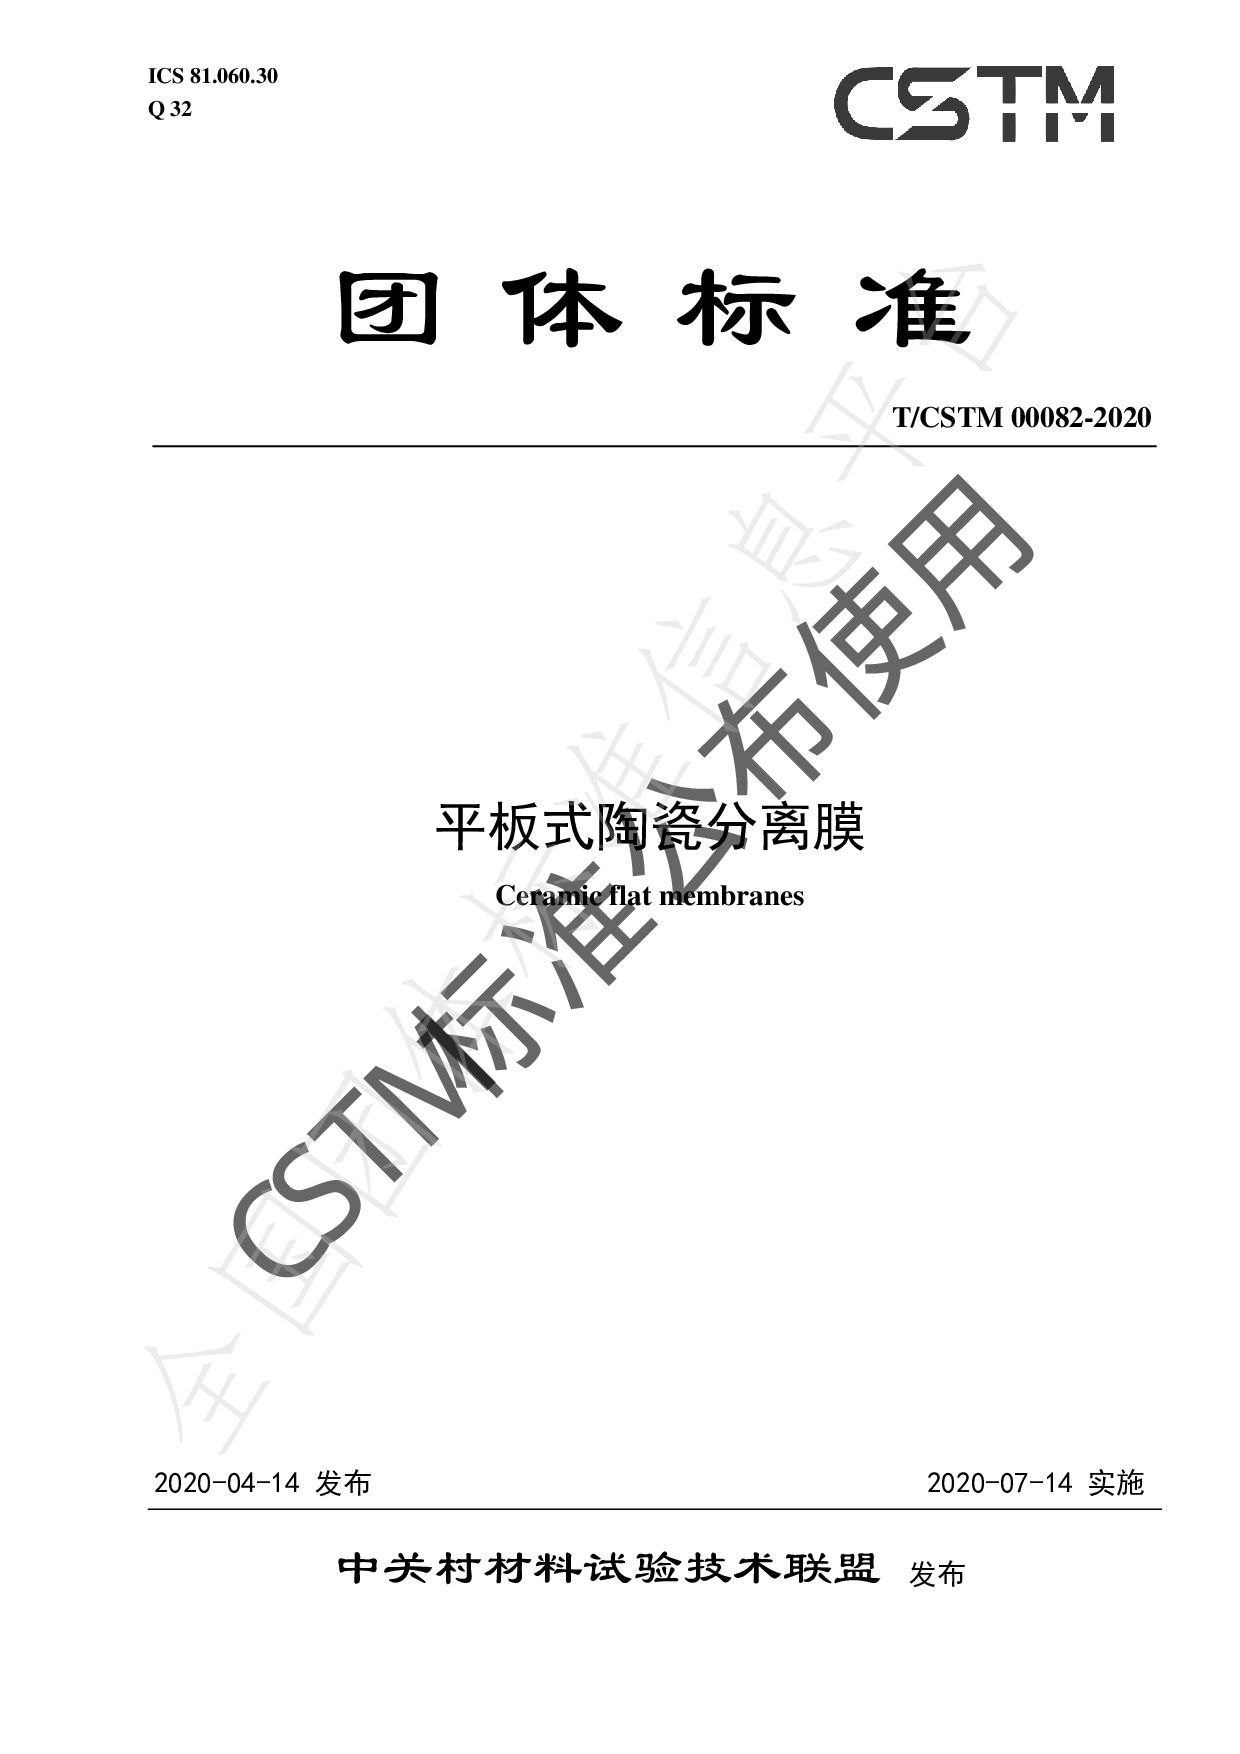 T/CSTM 00082—2020